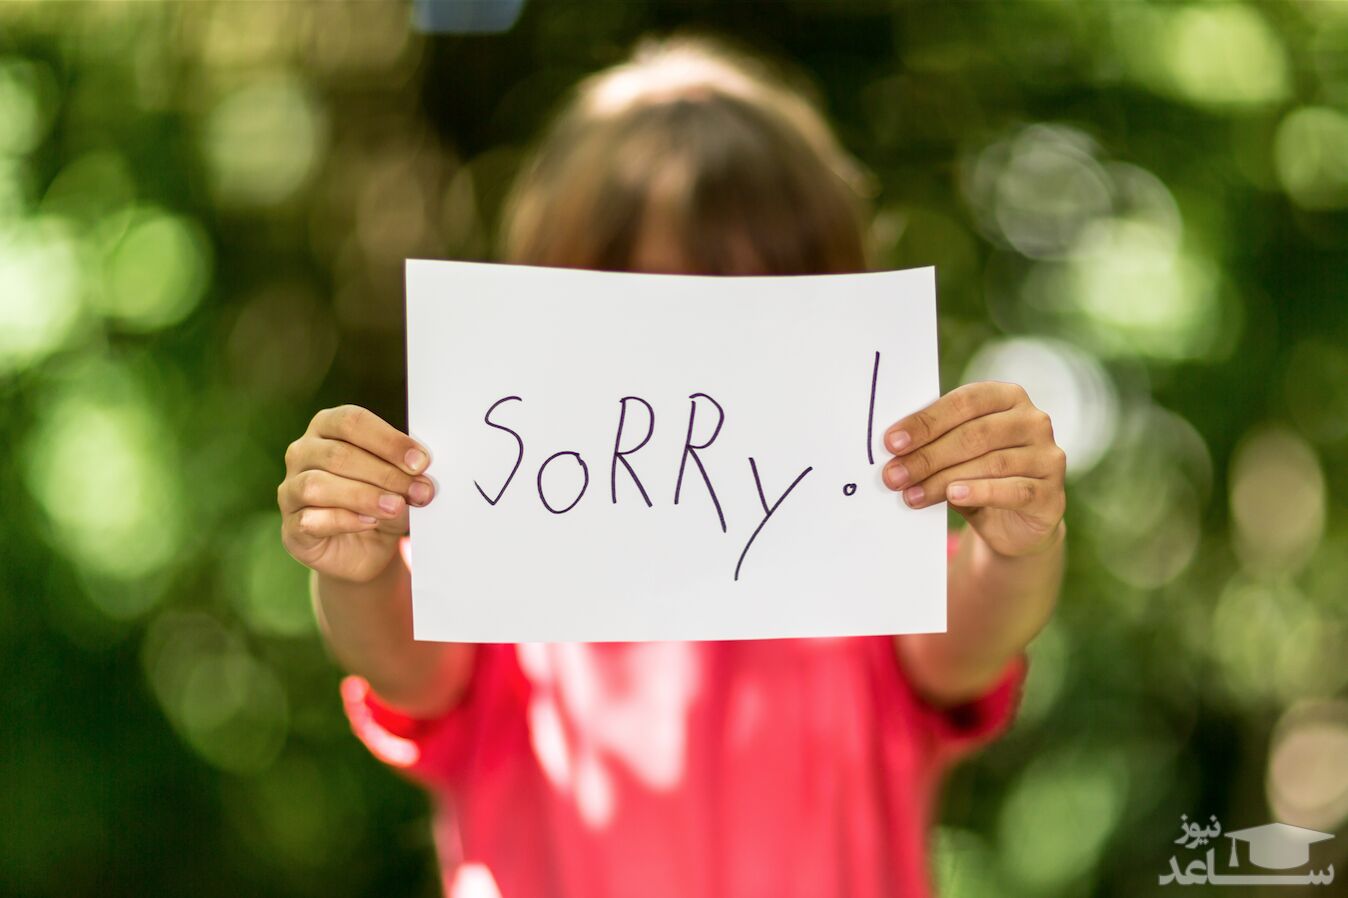 عذر خواهی کردن را چگونه به بچه ها یاد دهیم؟